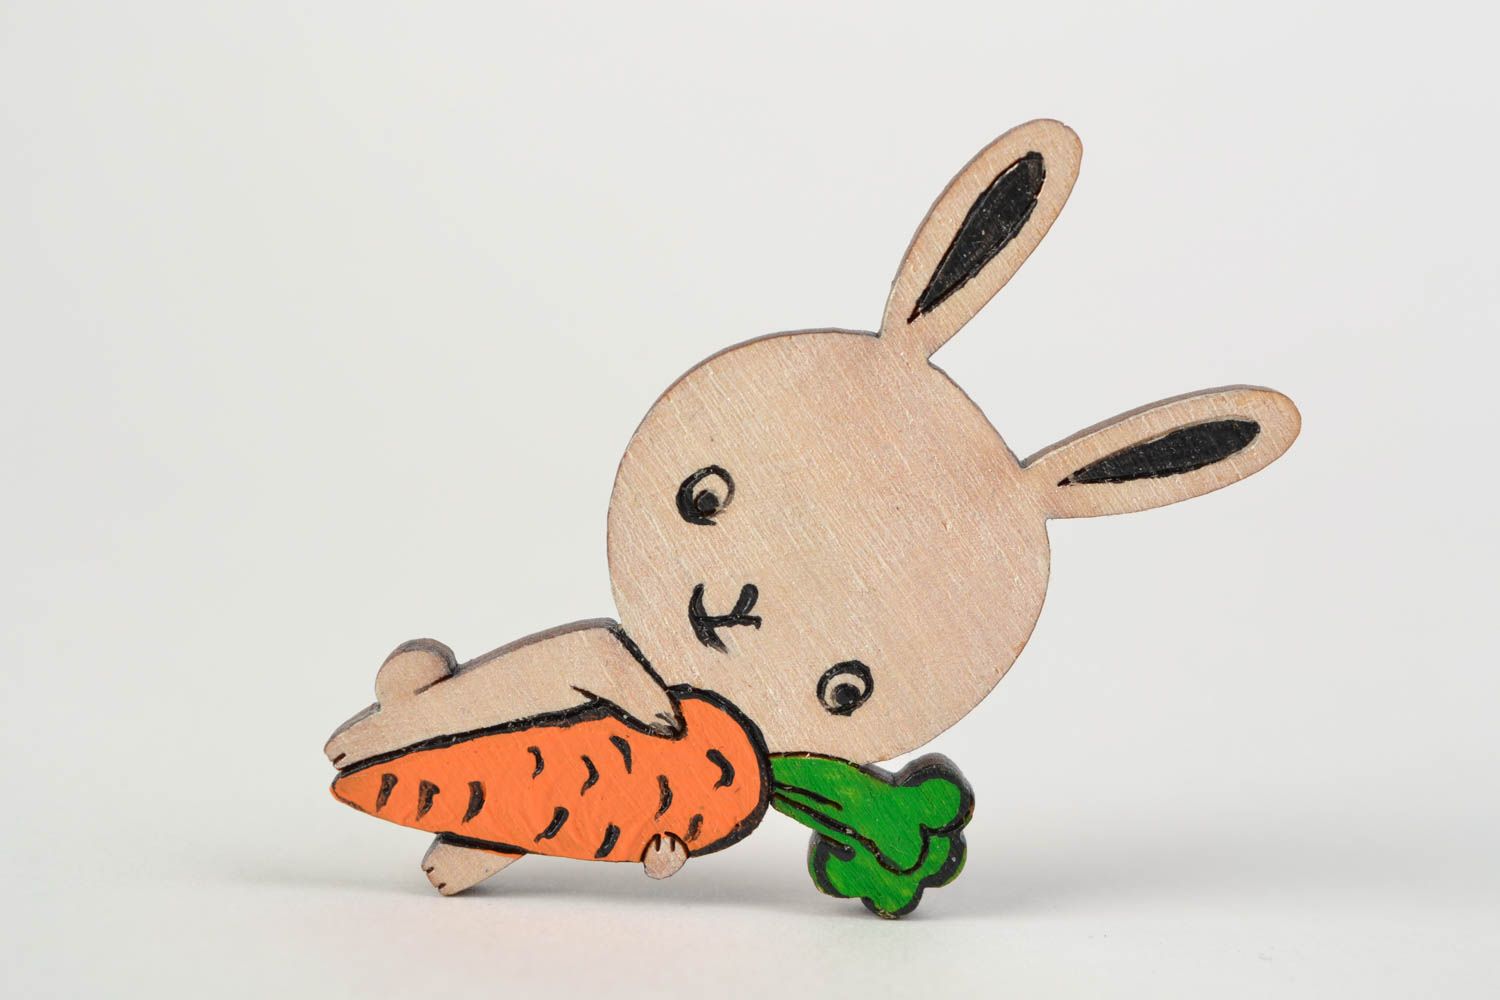 Смешная брошь из дерева в виде зайца с морковкой расписанная акриловыми красками  фото 1